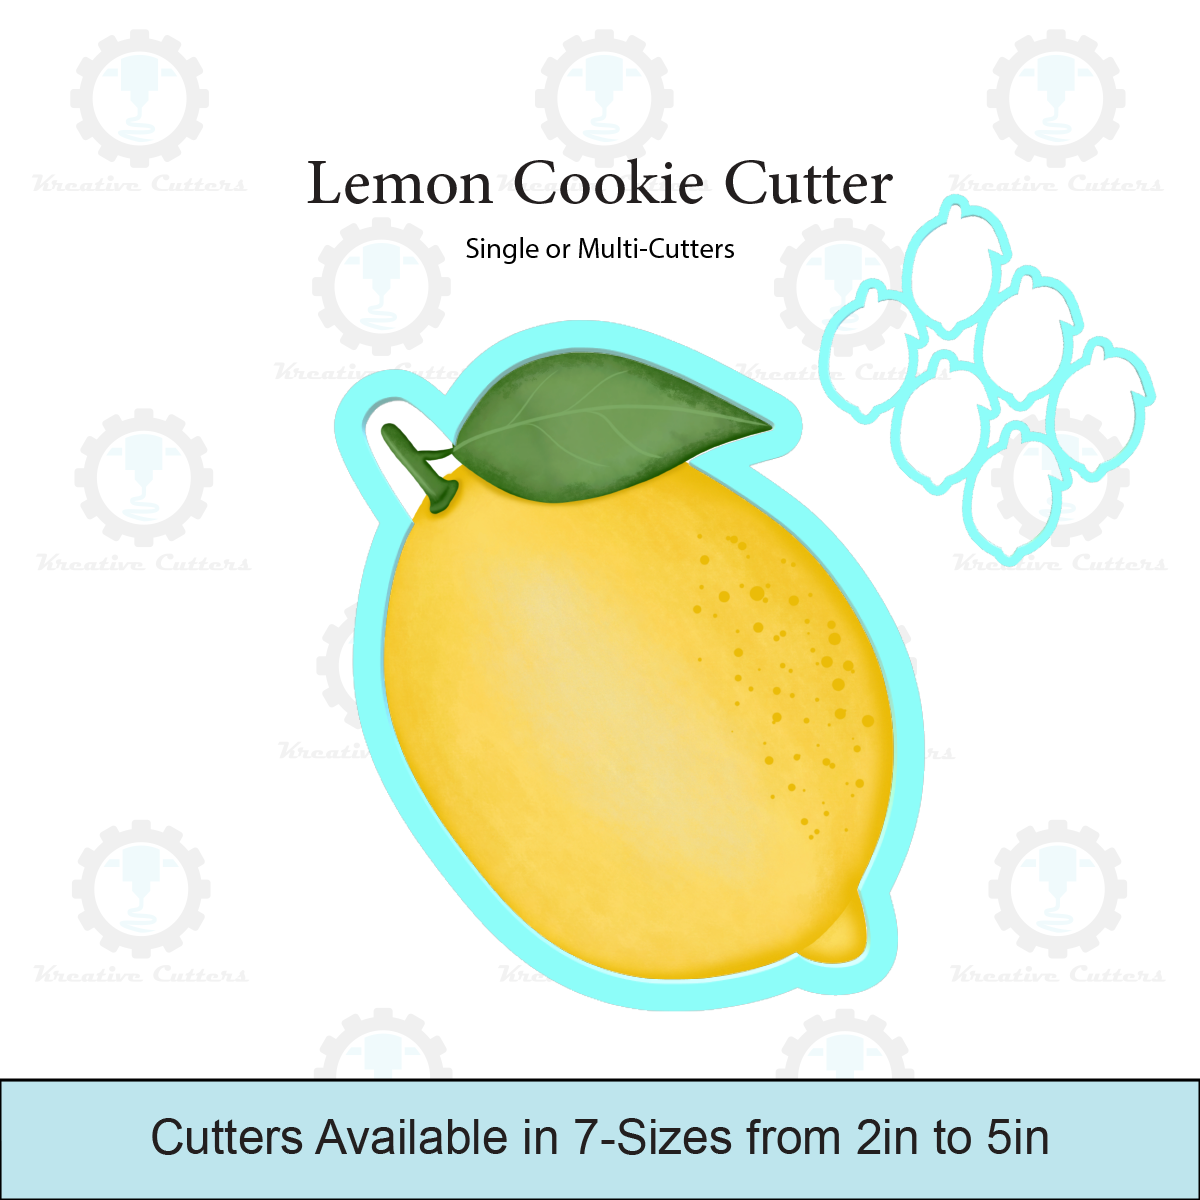 Lemon Cookie Cutter | Multi Cutter